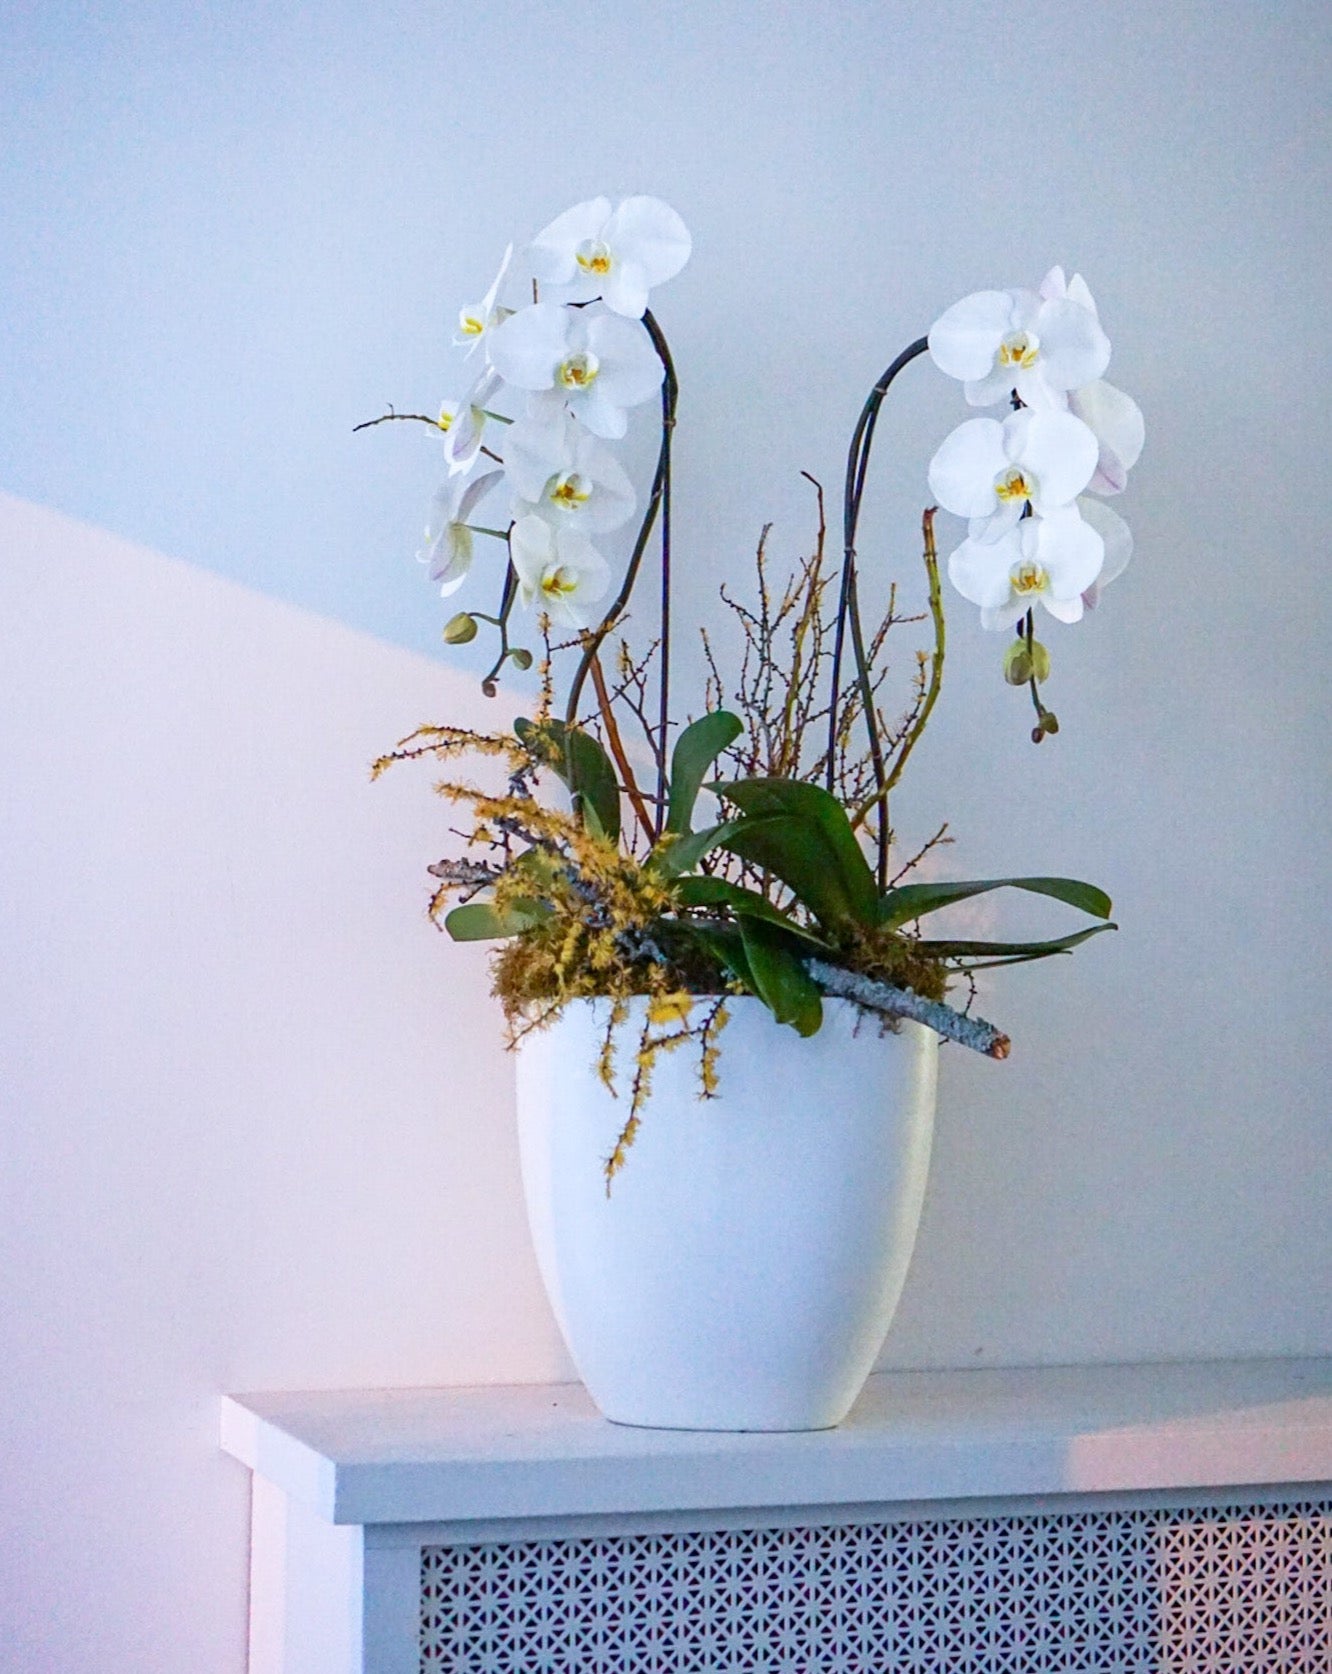 Swans orchid arrangement - The Flower Nook - Toronto Florist